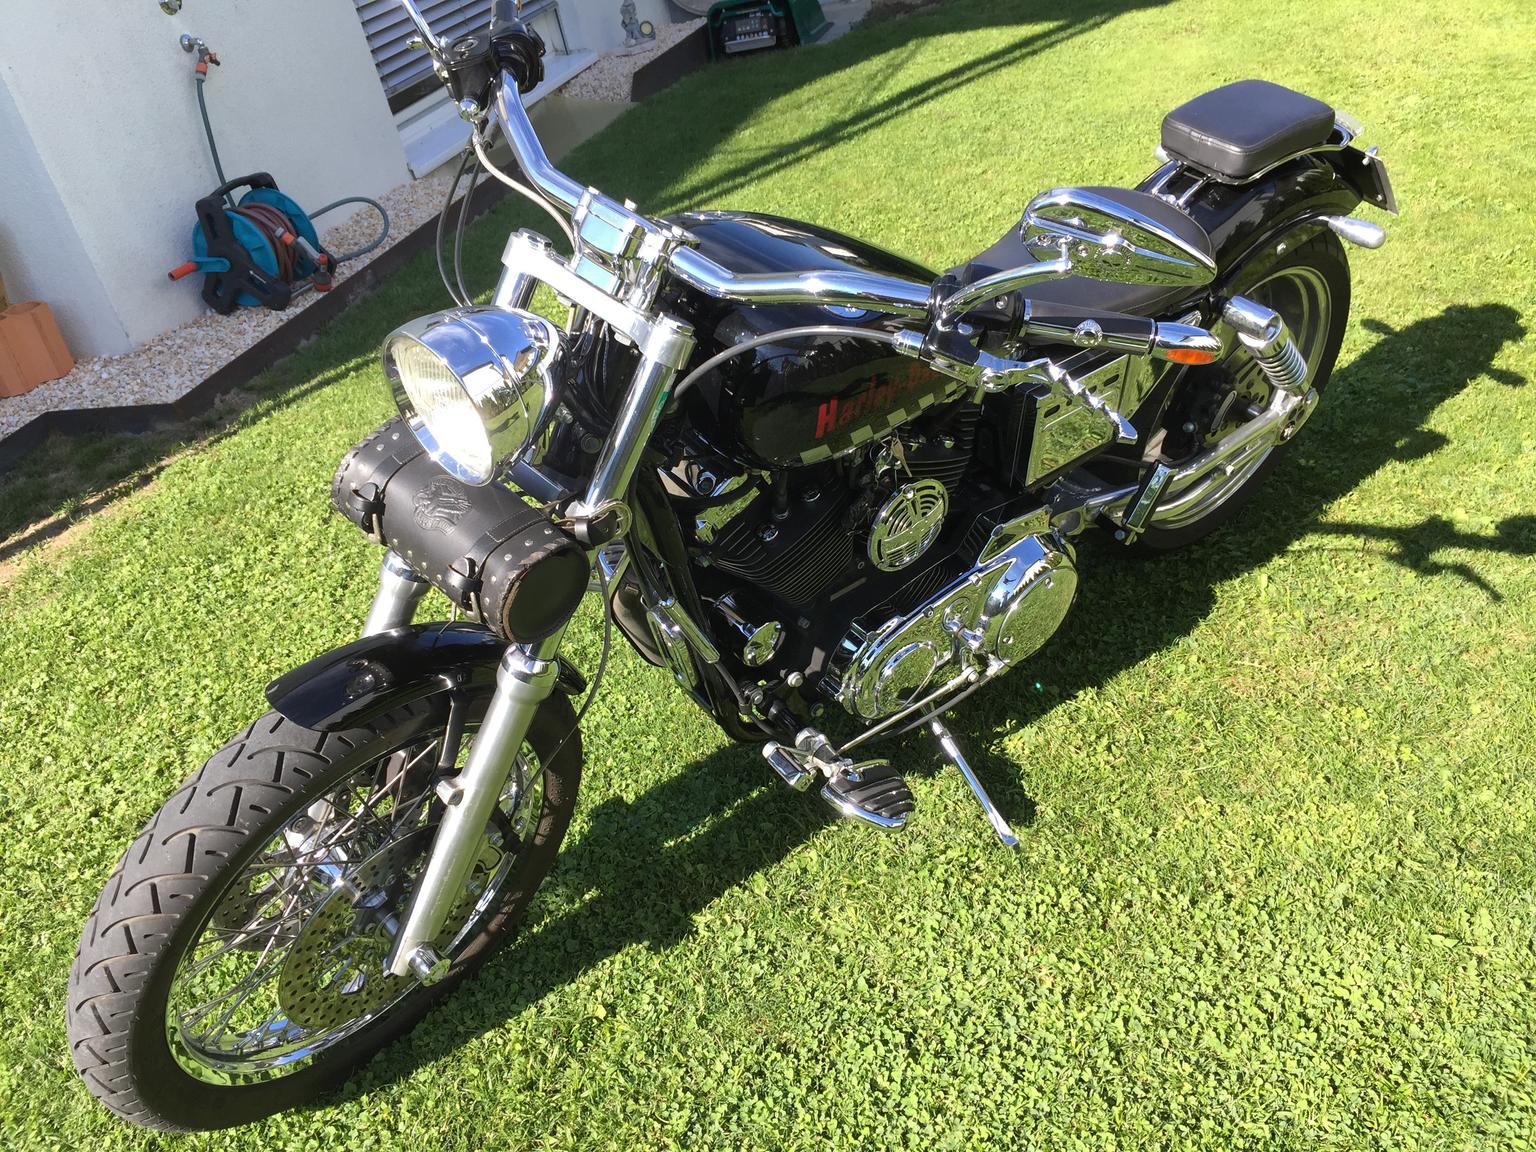 Harley Davidson Sportster Xl 1200 C In 6971 Hard For 8 900 00 For Sale Shpock